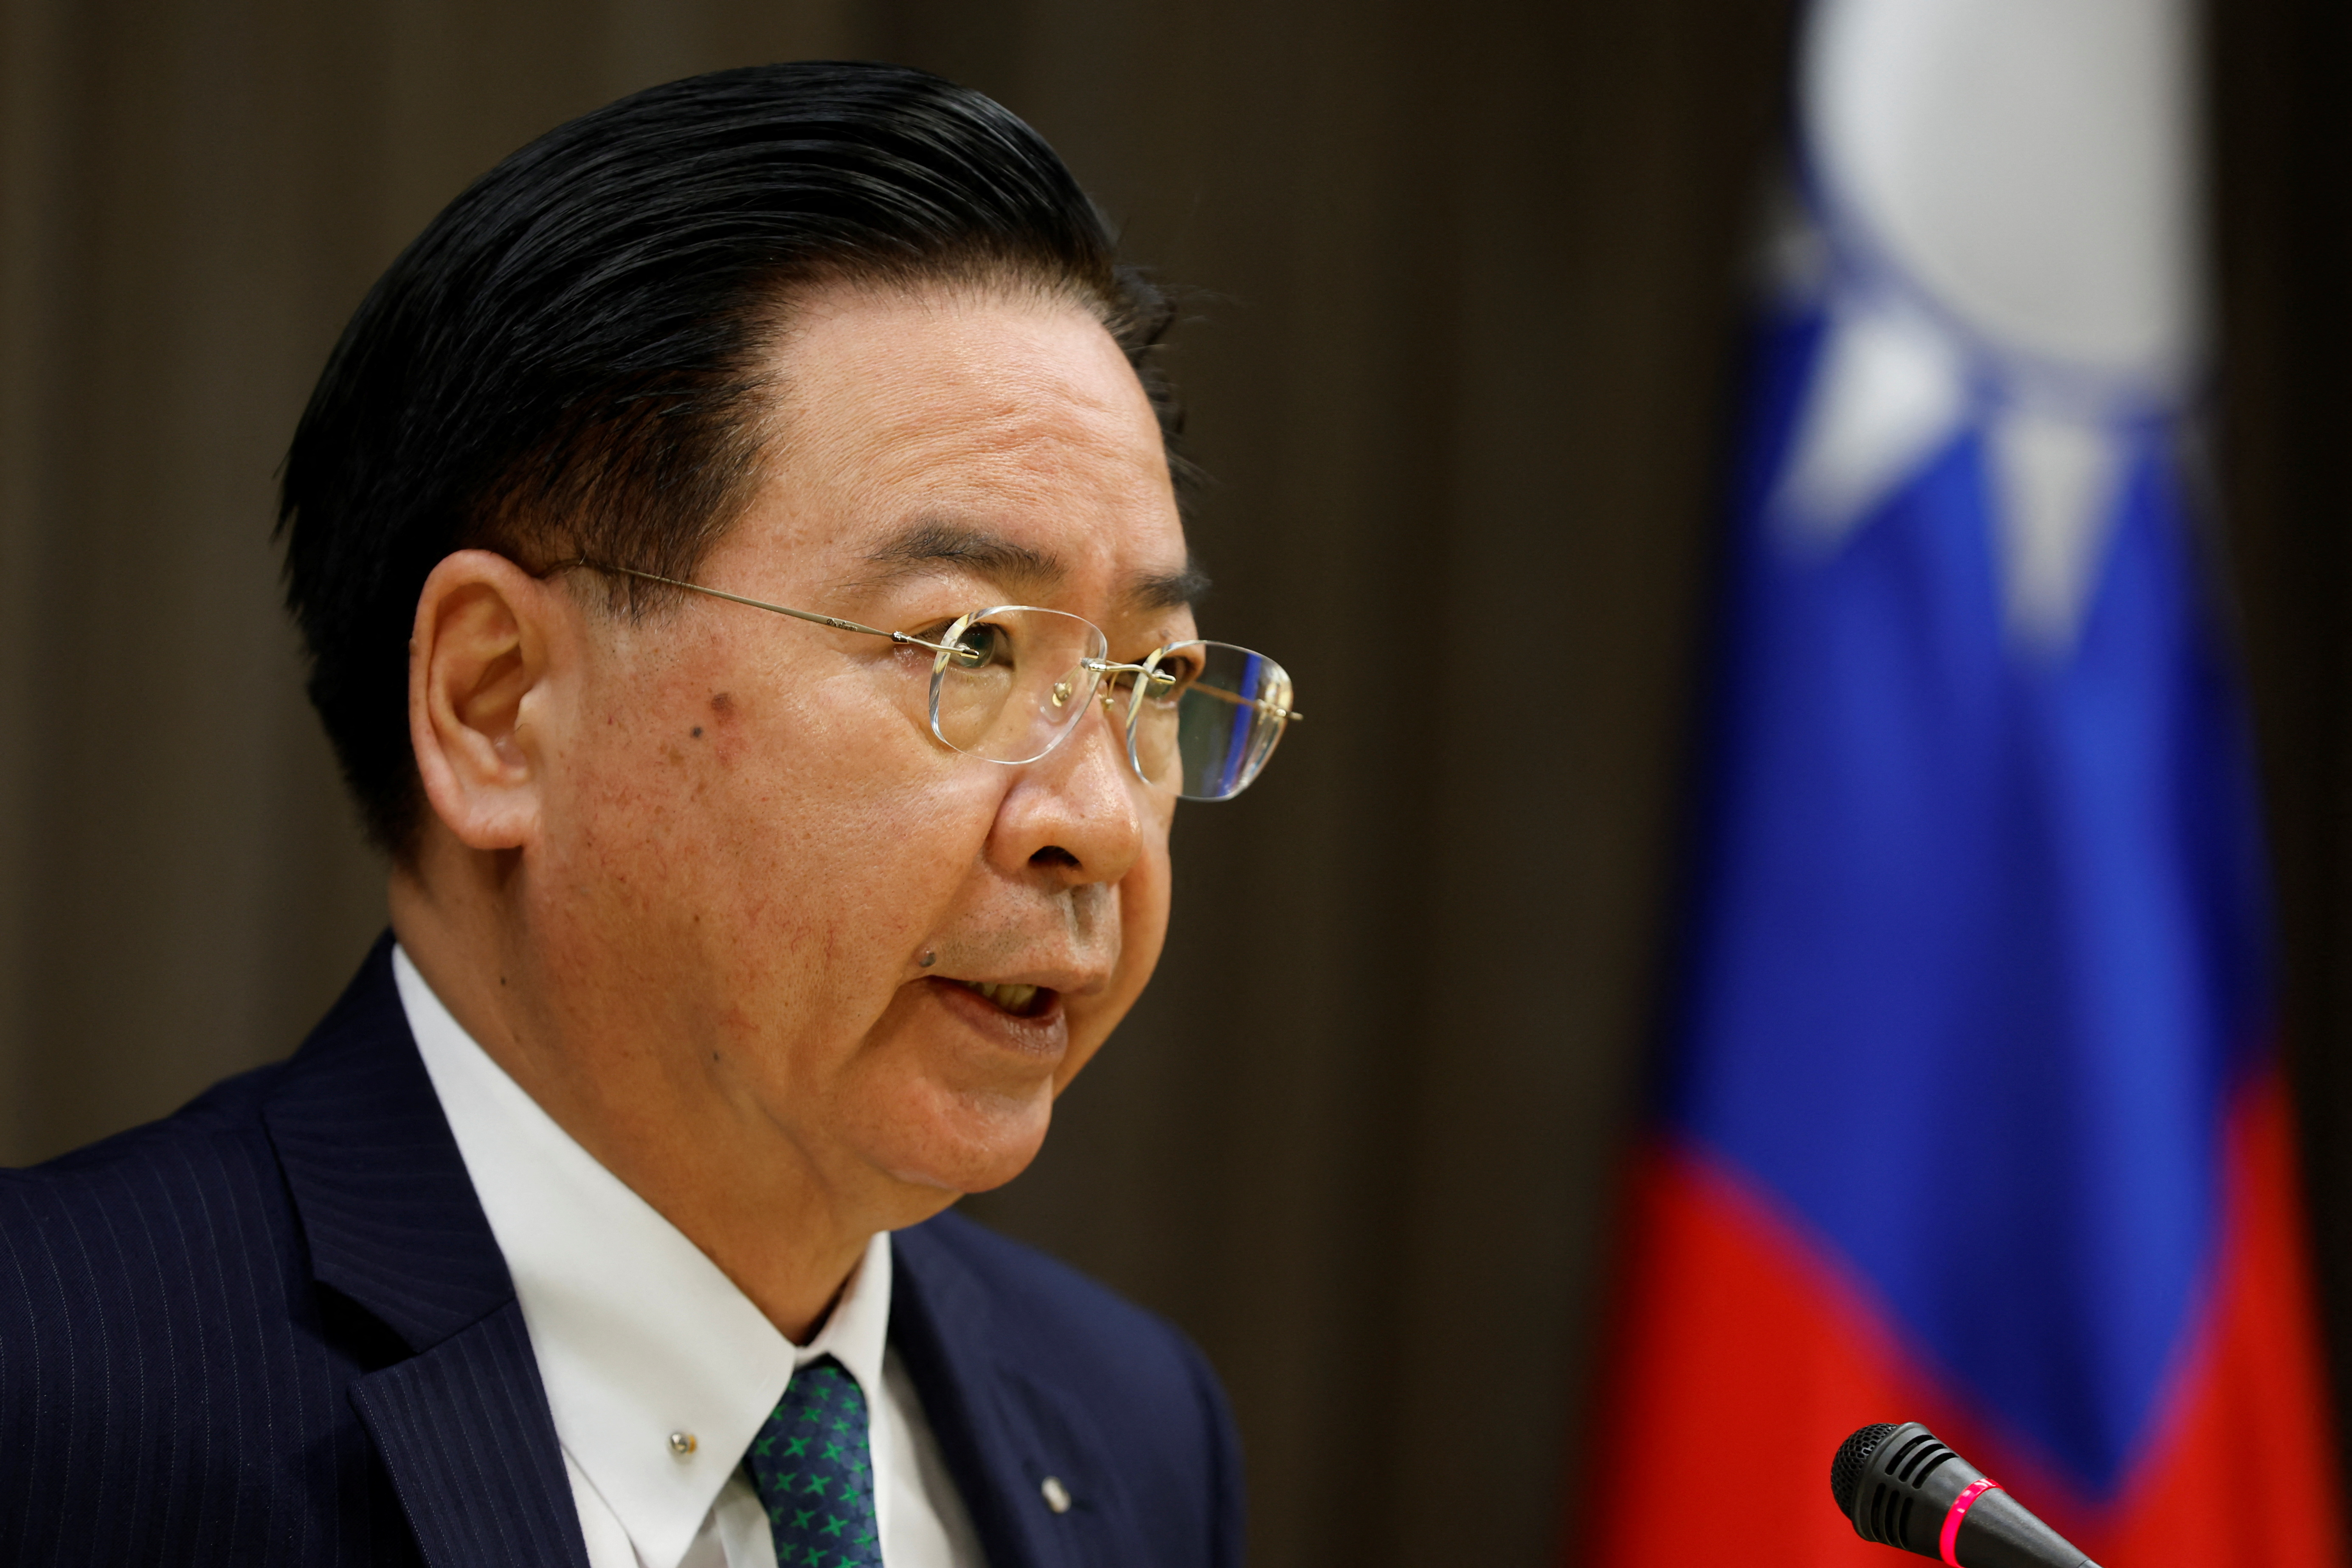 Taiwán aseguró que Honduras “se hace ilusiones” ante las promesas del régimen chino de una supuesta ayuda financiera. (REUTERS)